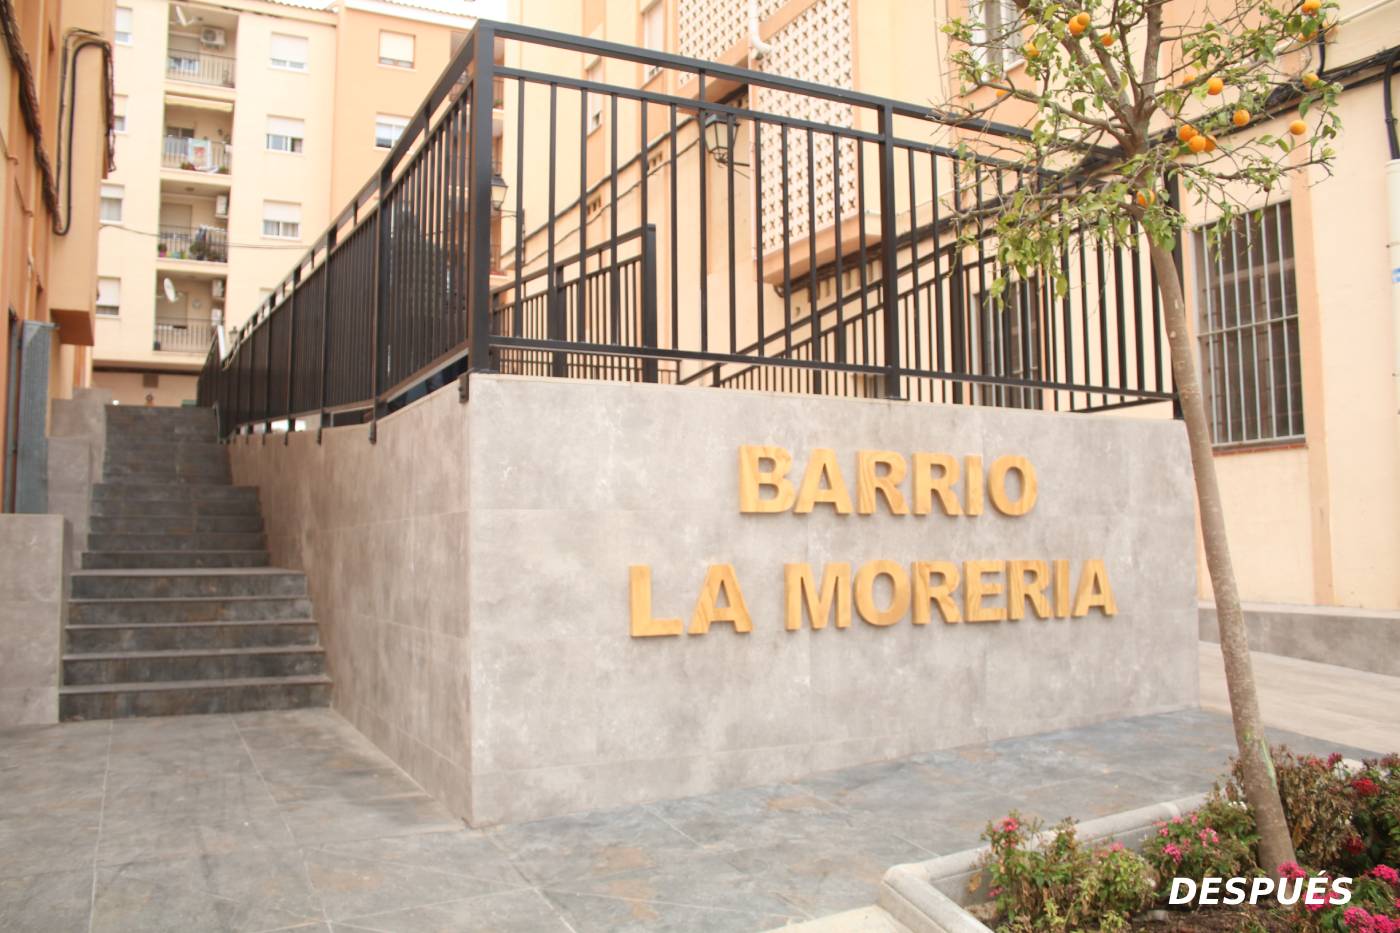 Escaleras<br/>Barrio de la Morería<br/>Onda